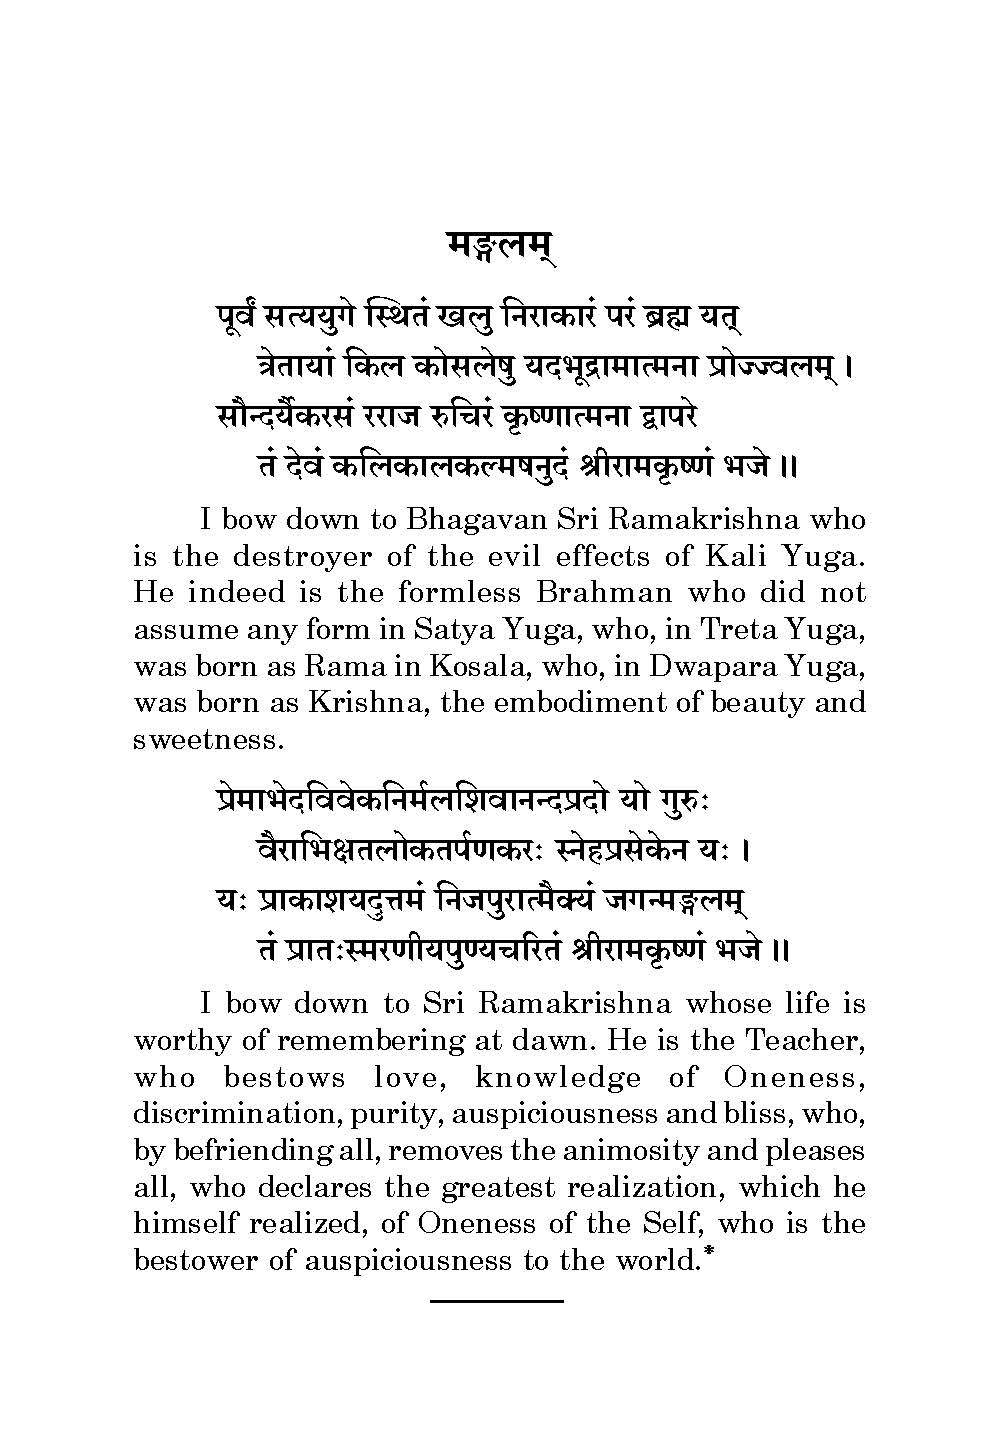 Sri Ramakrishna Karnamritam